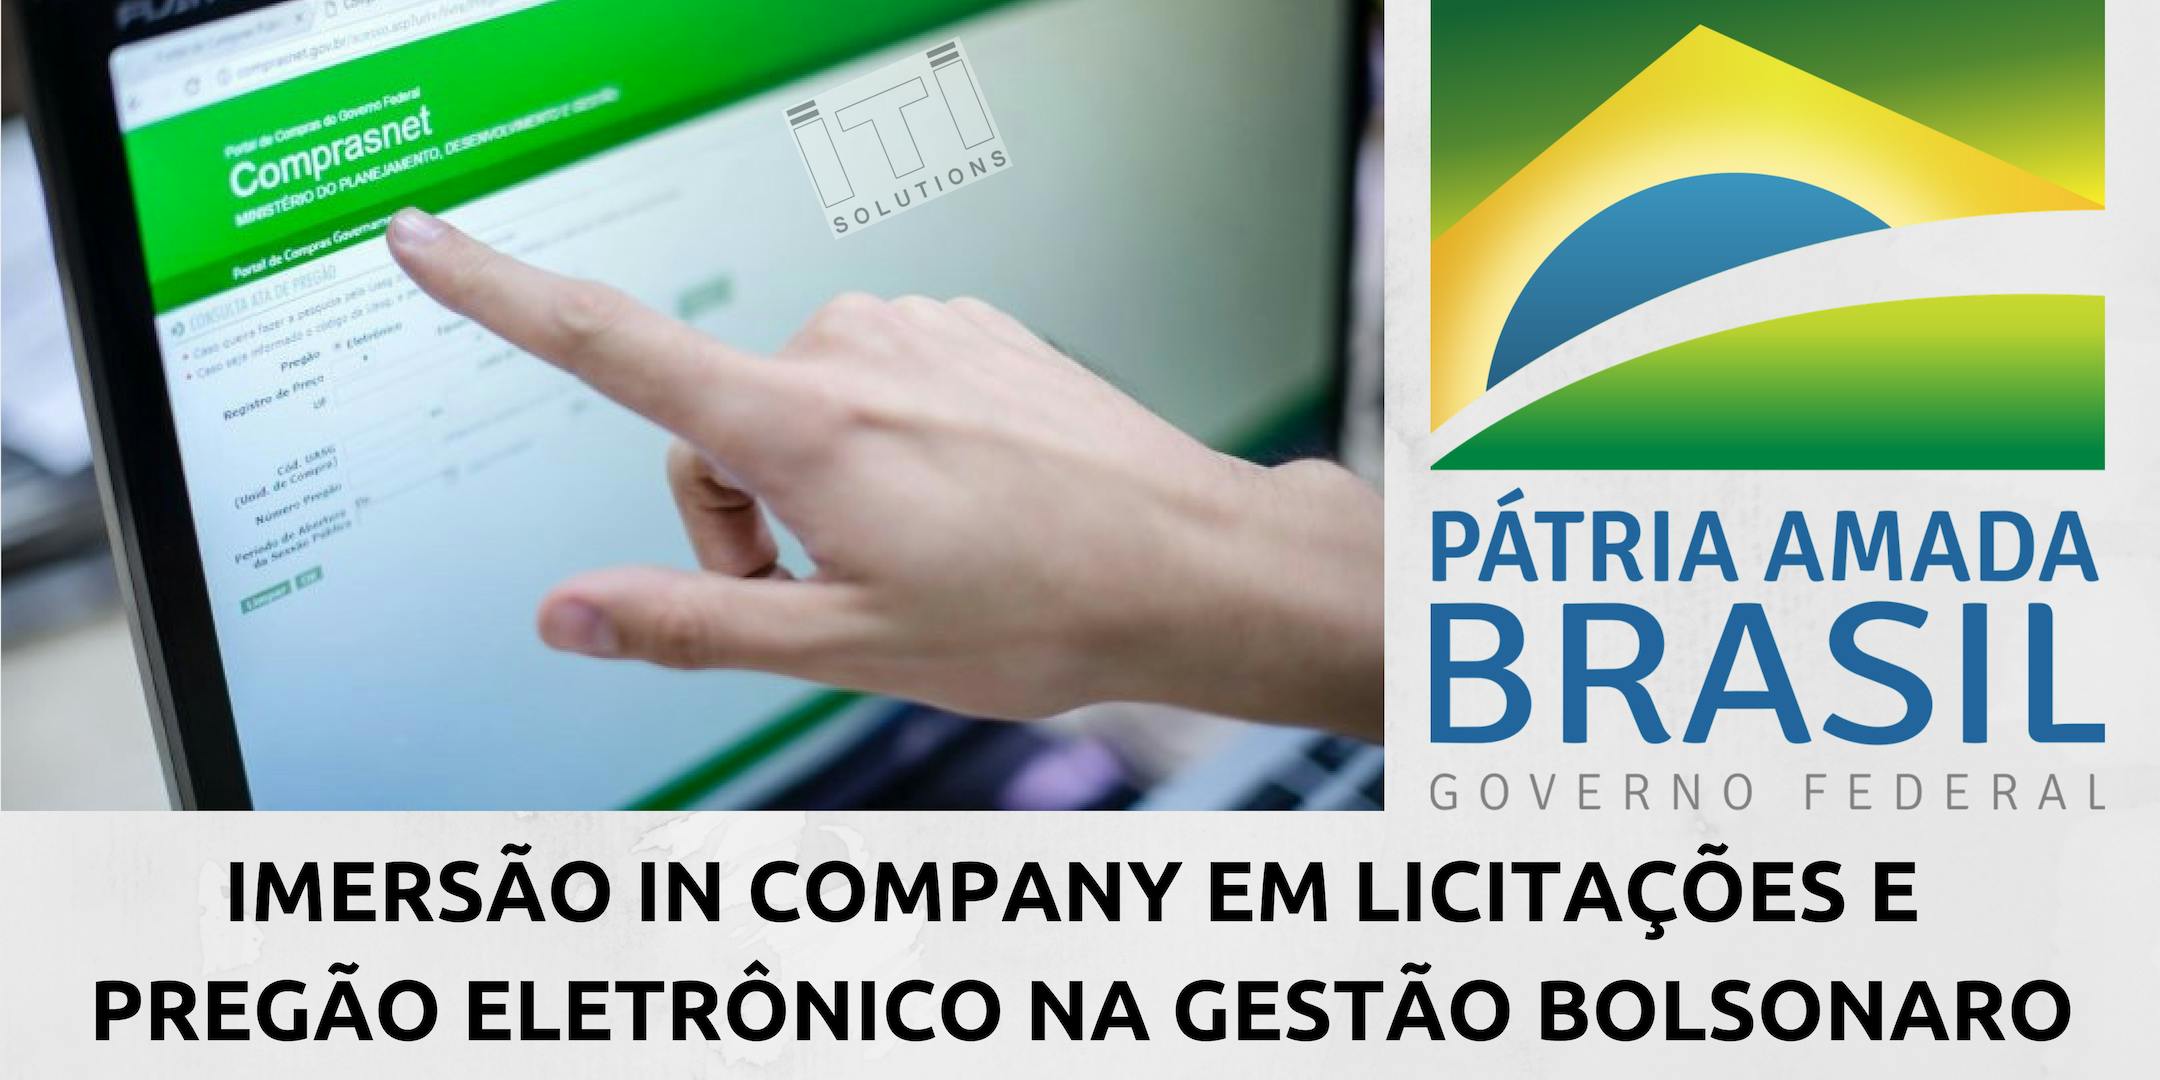 TREINAMENTO EM LICITAÇÕES In Company - ÁREA COMERCIAL/BACKOFFICE - SÃO BERNARDO DO CAMPO